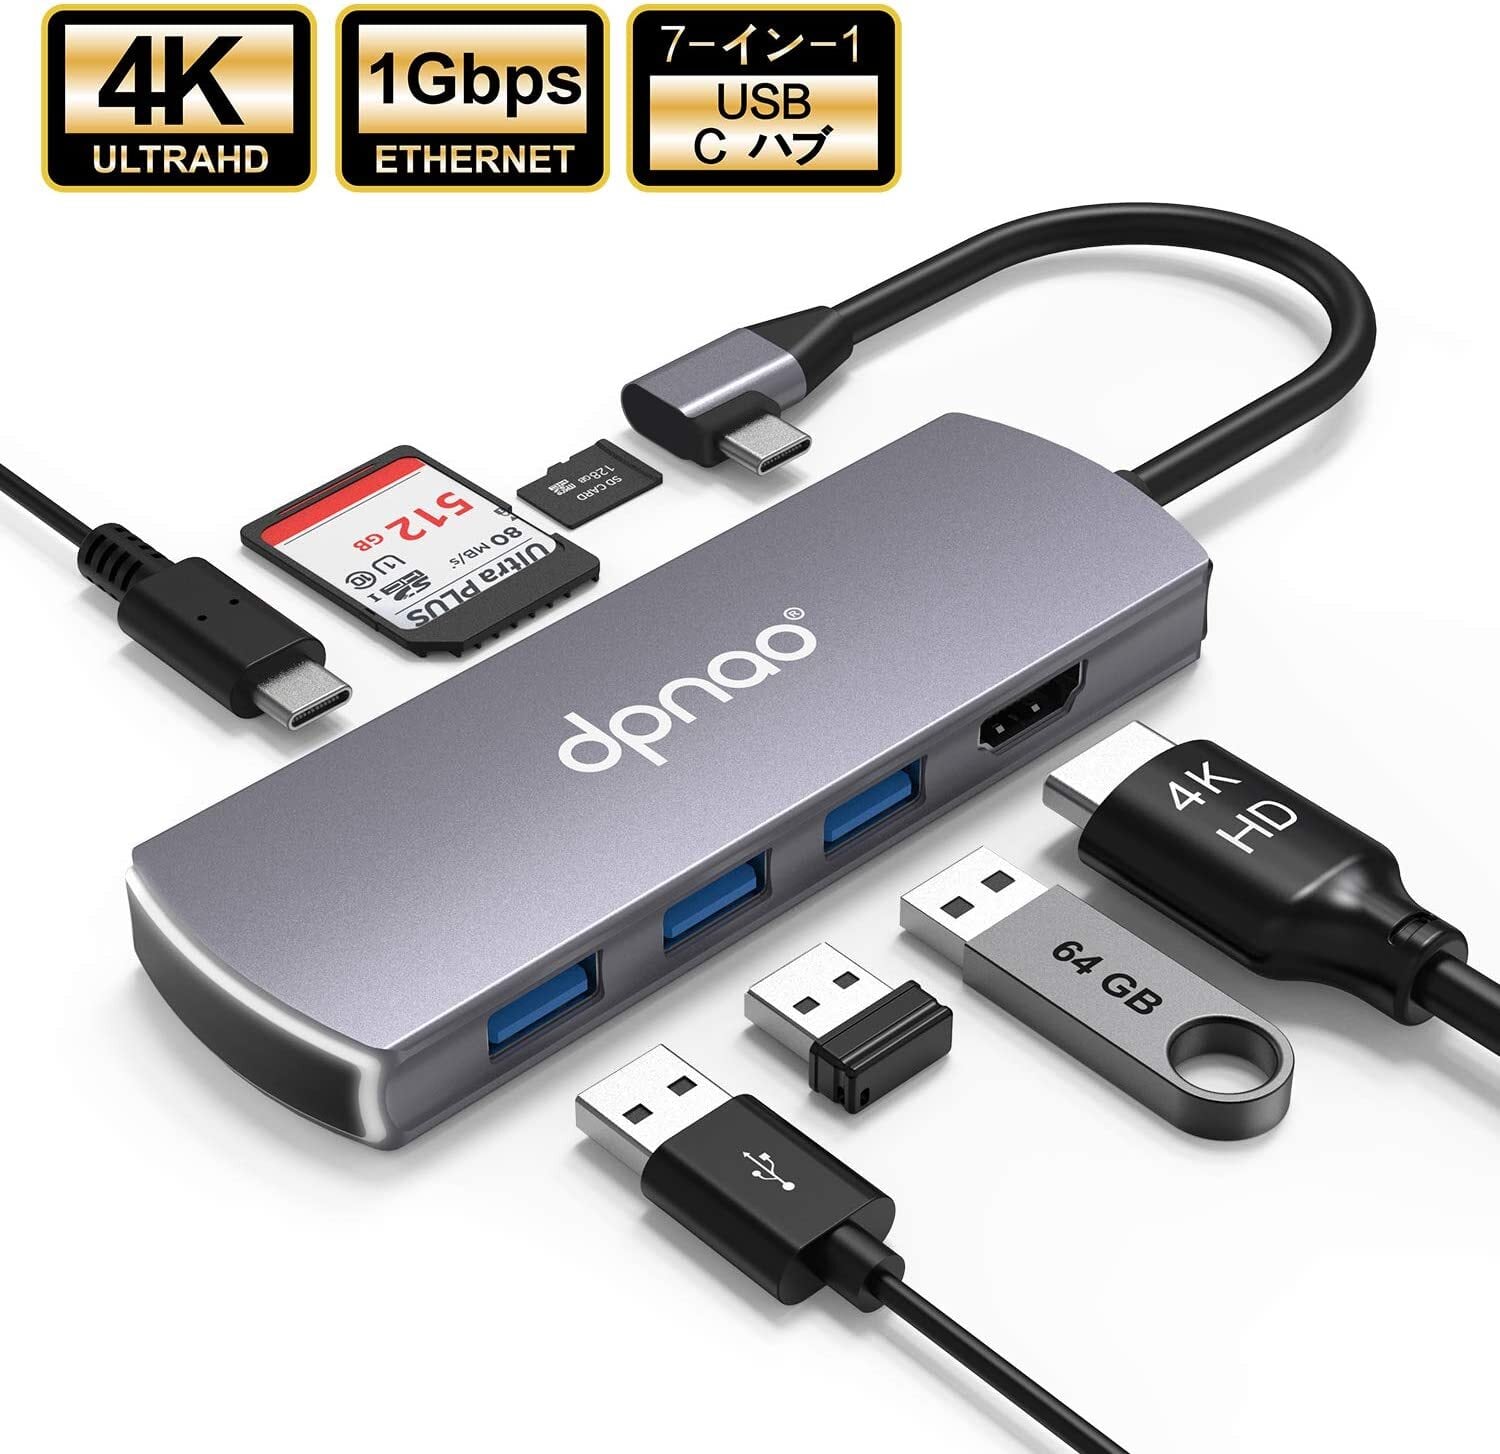 USB-HDMI変換アダプタ USB3.0ハブ付